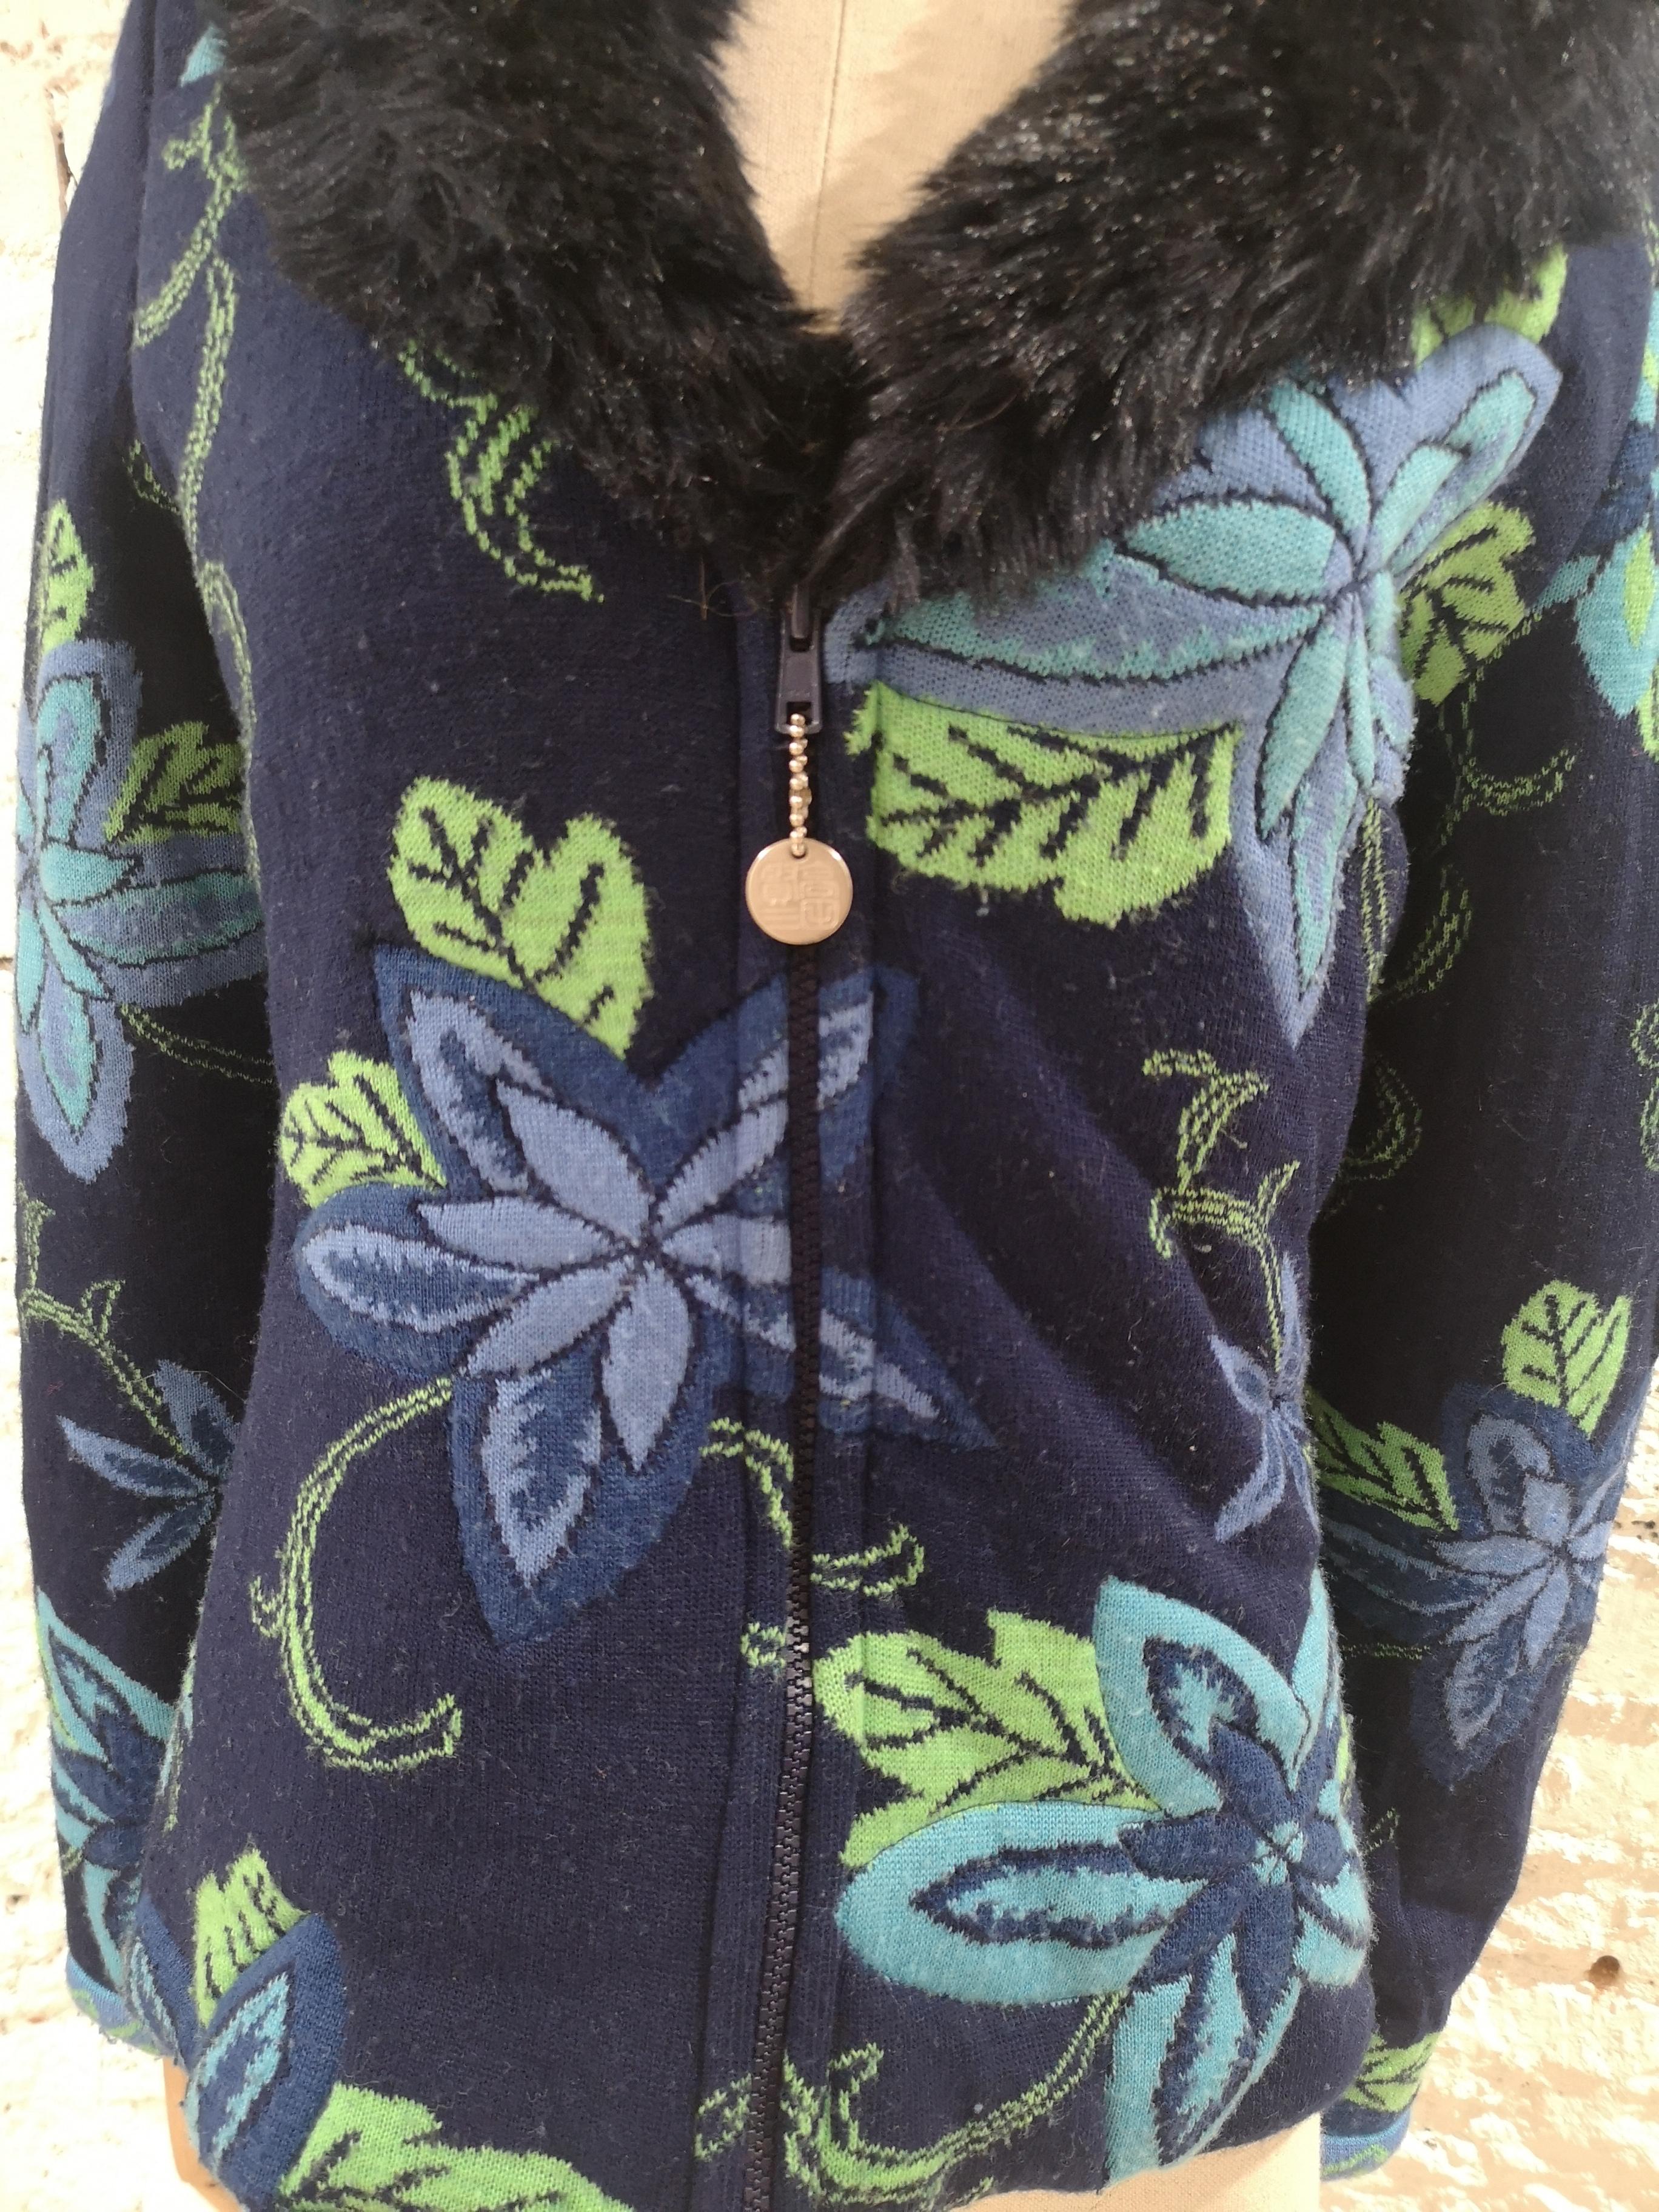 Kenzo Dschungel-Wolljacke / Strickjacke
Blaue und grüne Wolljacke von Kenzo 
verschönert mit Kunstpelzkragen
größe L